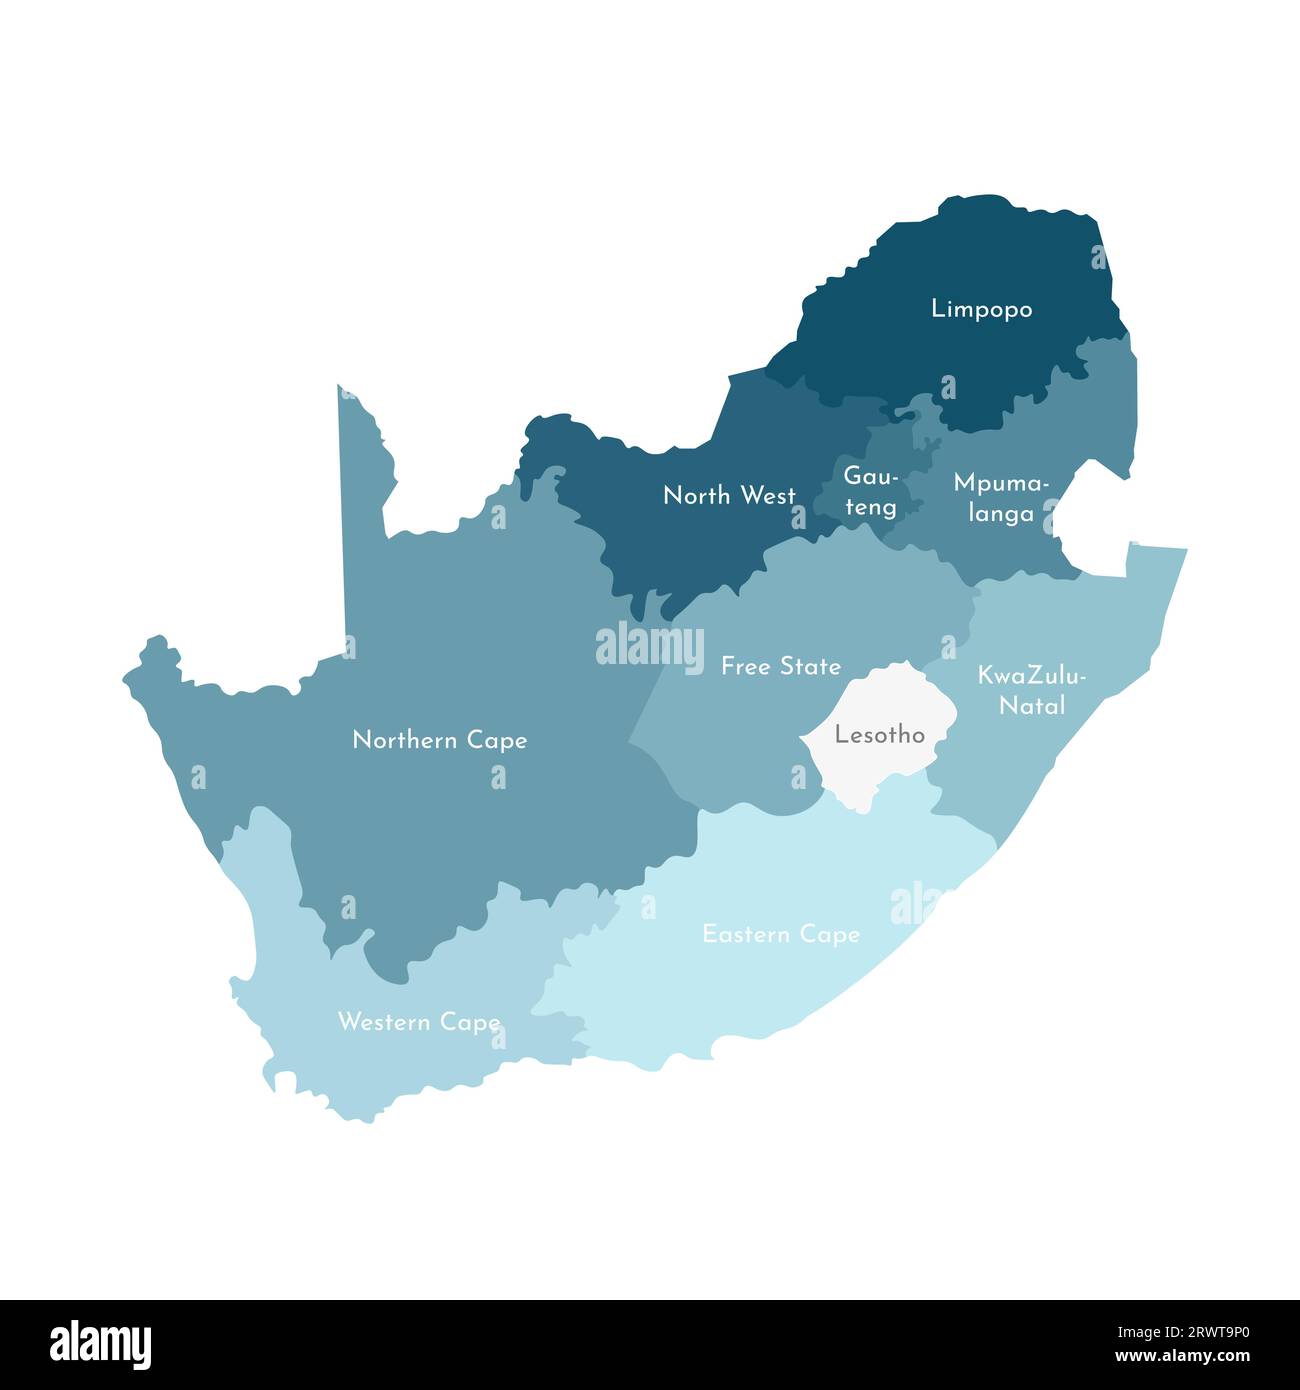 Illustrazione vettoriale isolata della mappa amministrativa semplificata del Sudafrica. Confini e nomi delle regioni. Sagome kaki blu colorato. Illustrazione Vettoriale